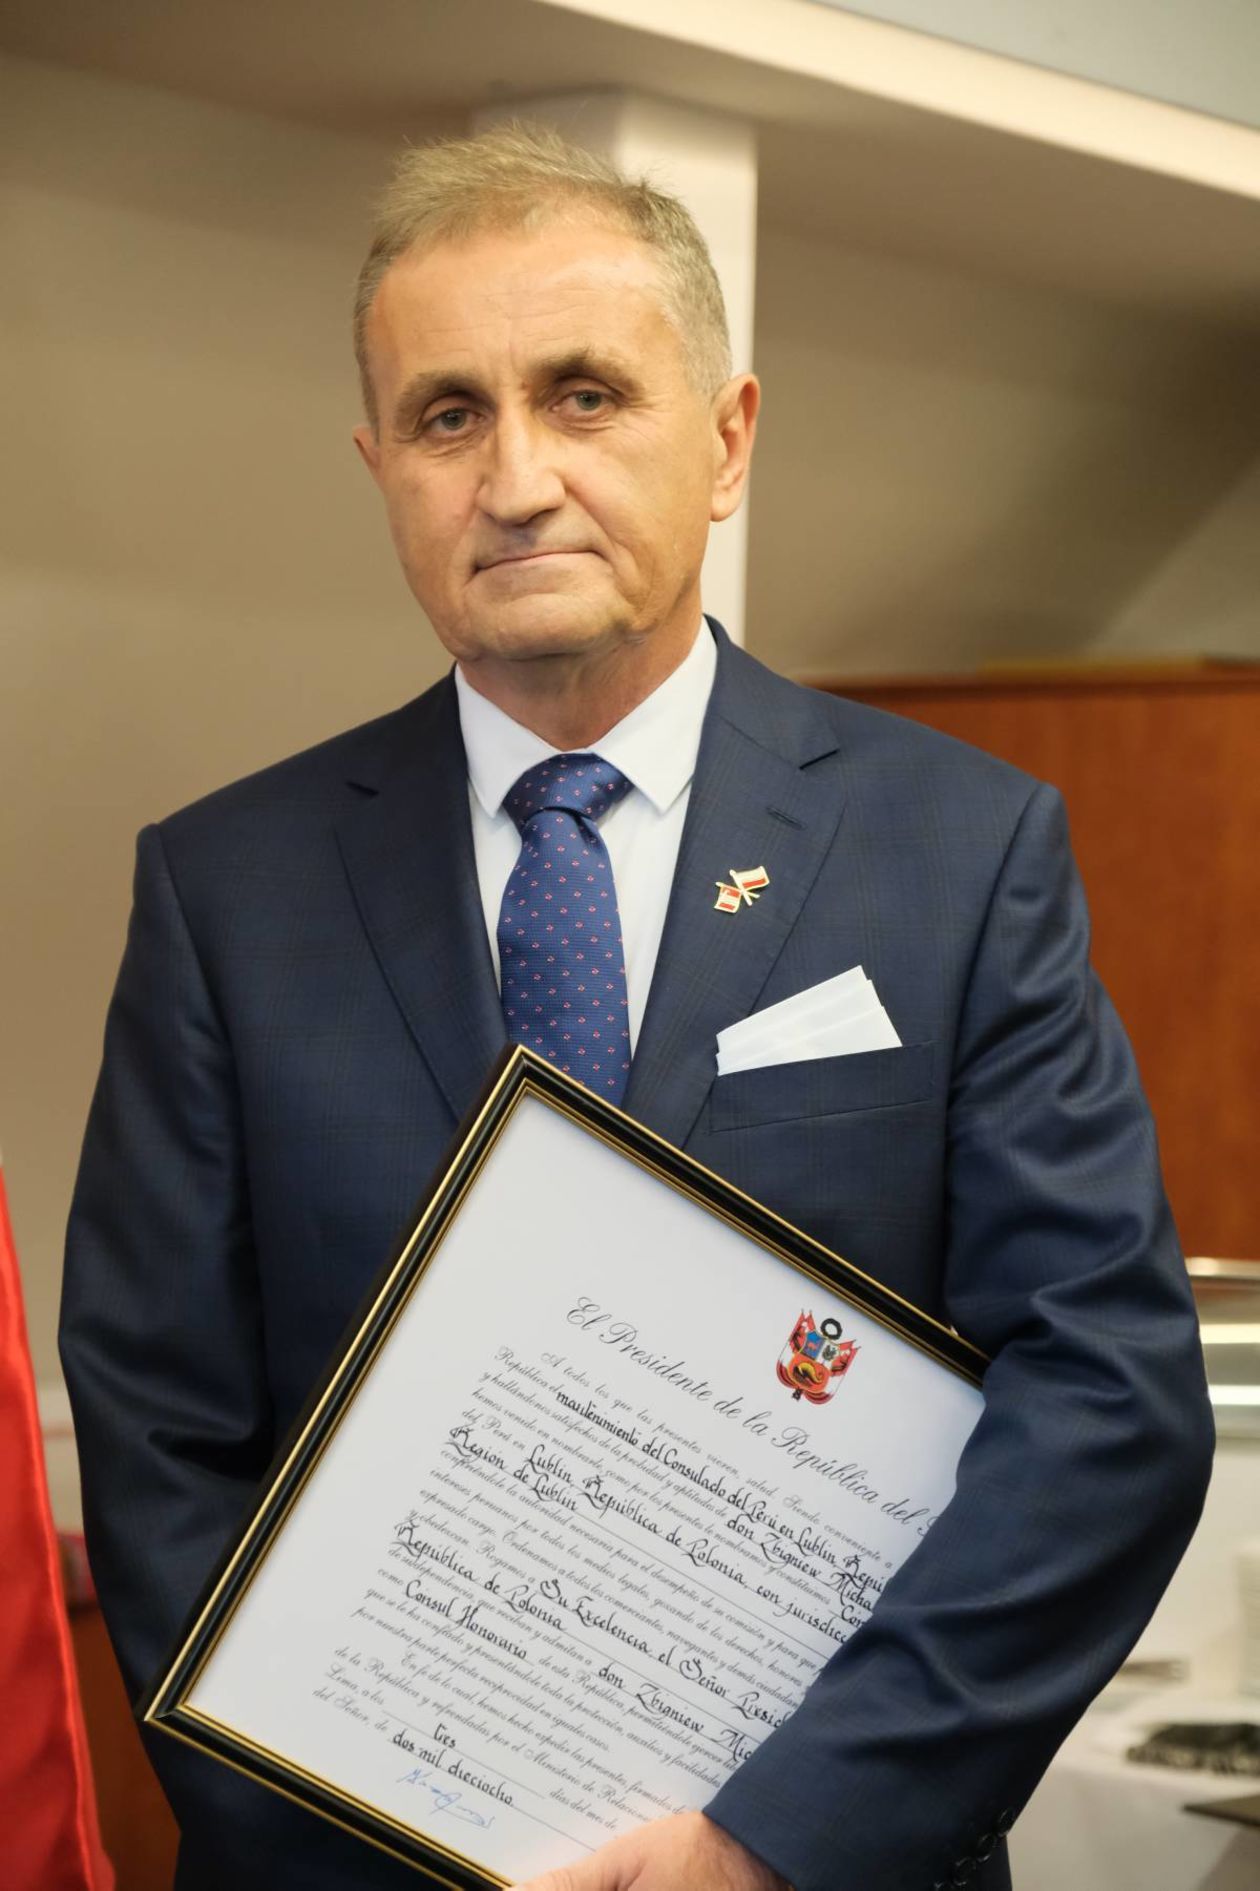  Otwarcie Honorowego Konsulatu Peru w Lublinie  - Autor: Maciej Kaczanowski